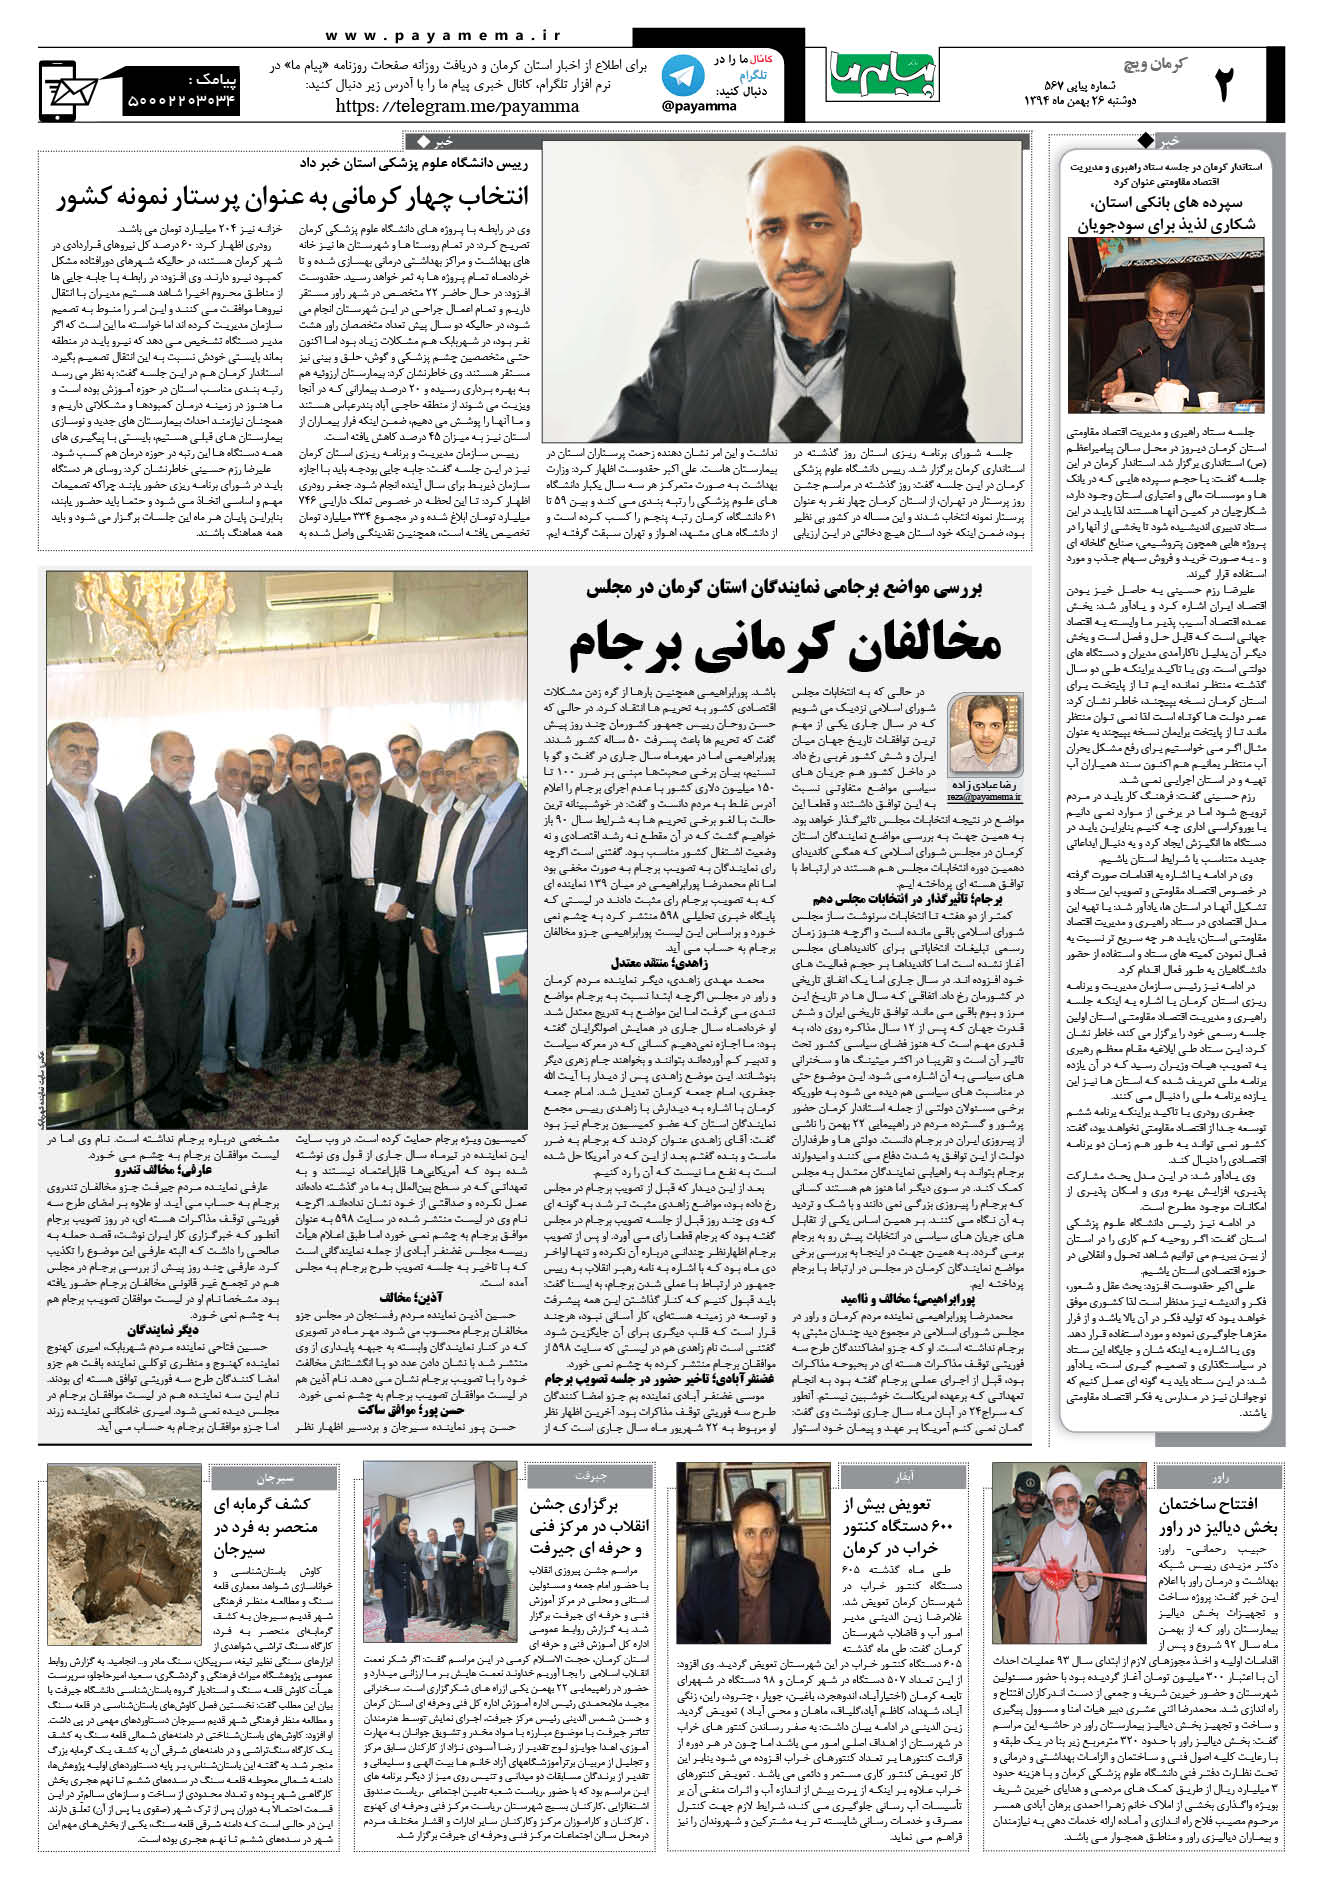 صفحه کرمان ویج شماره 567 روزنامه پیام ما